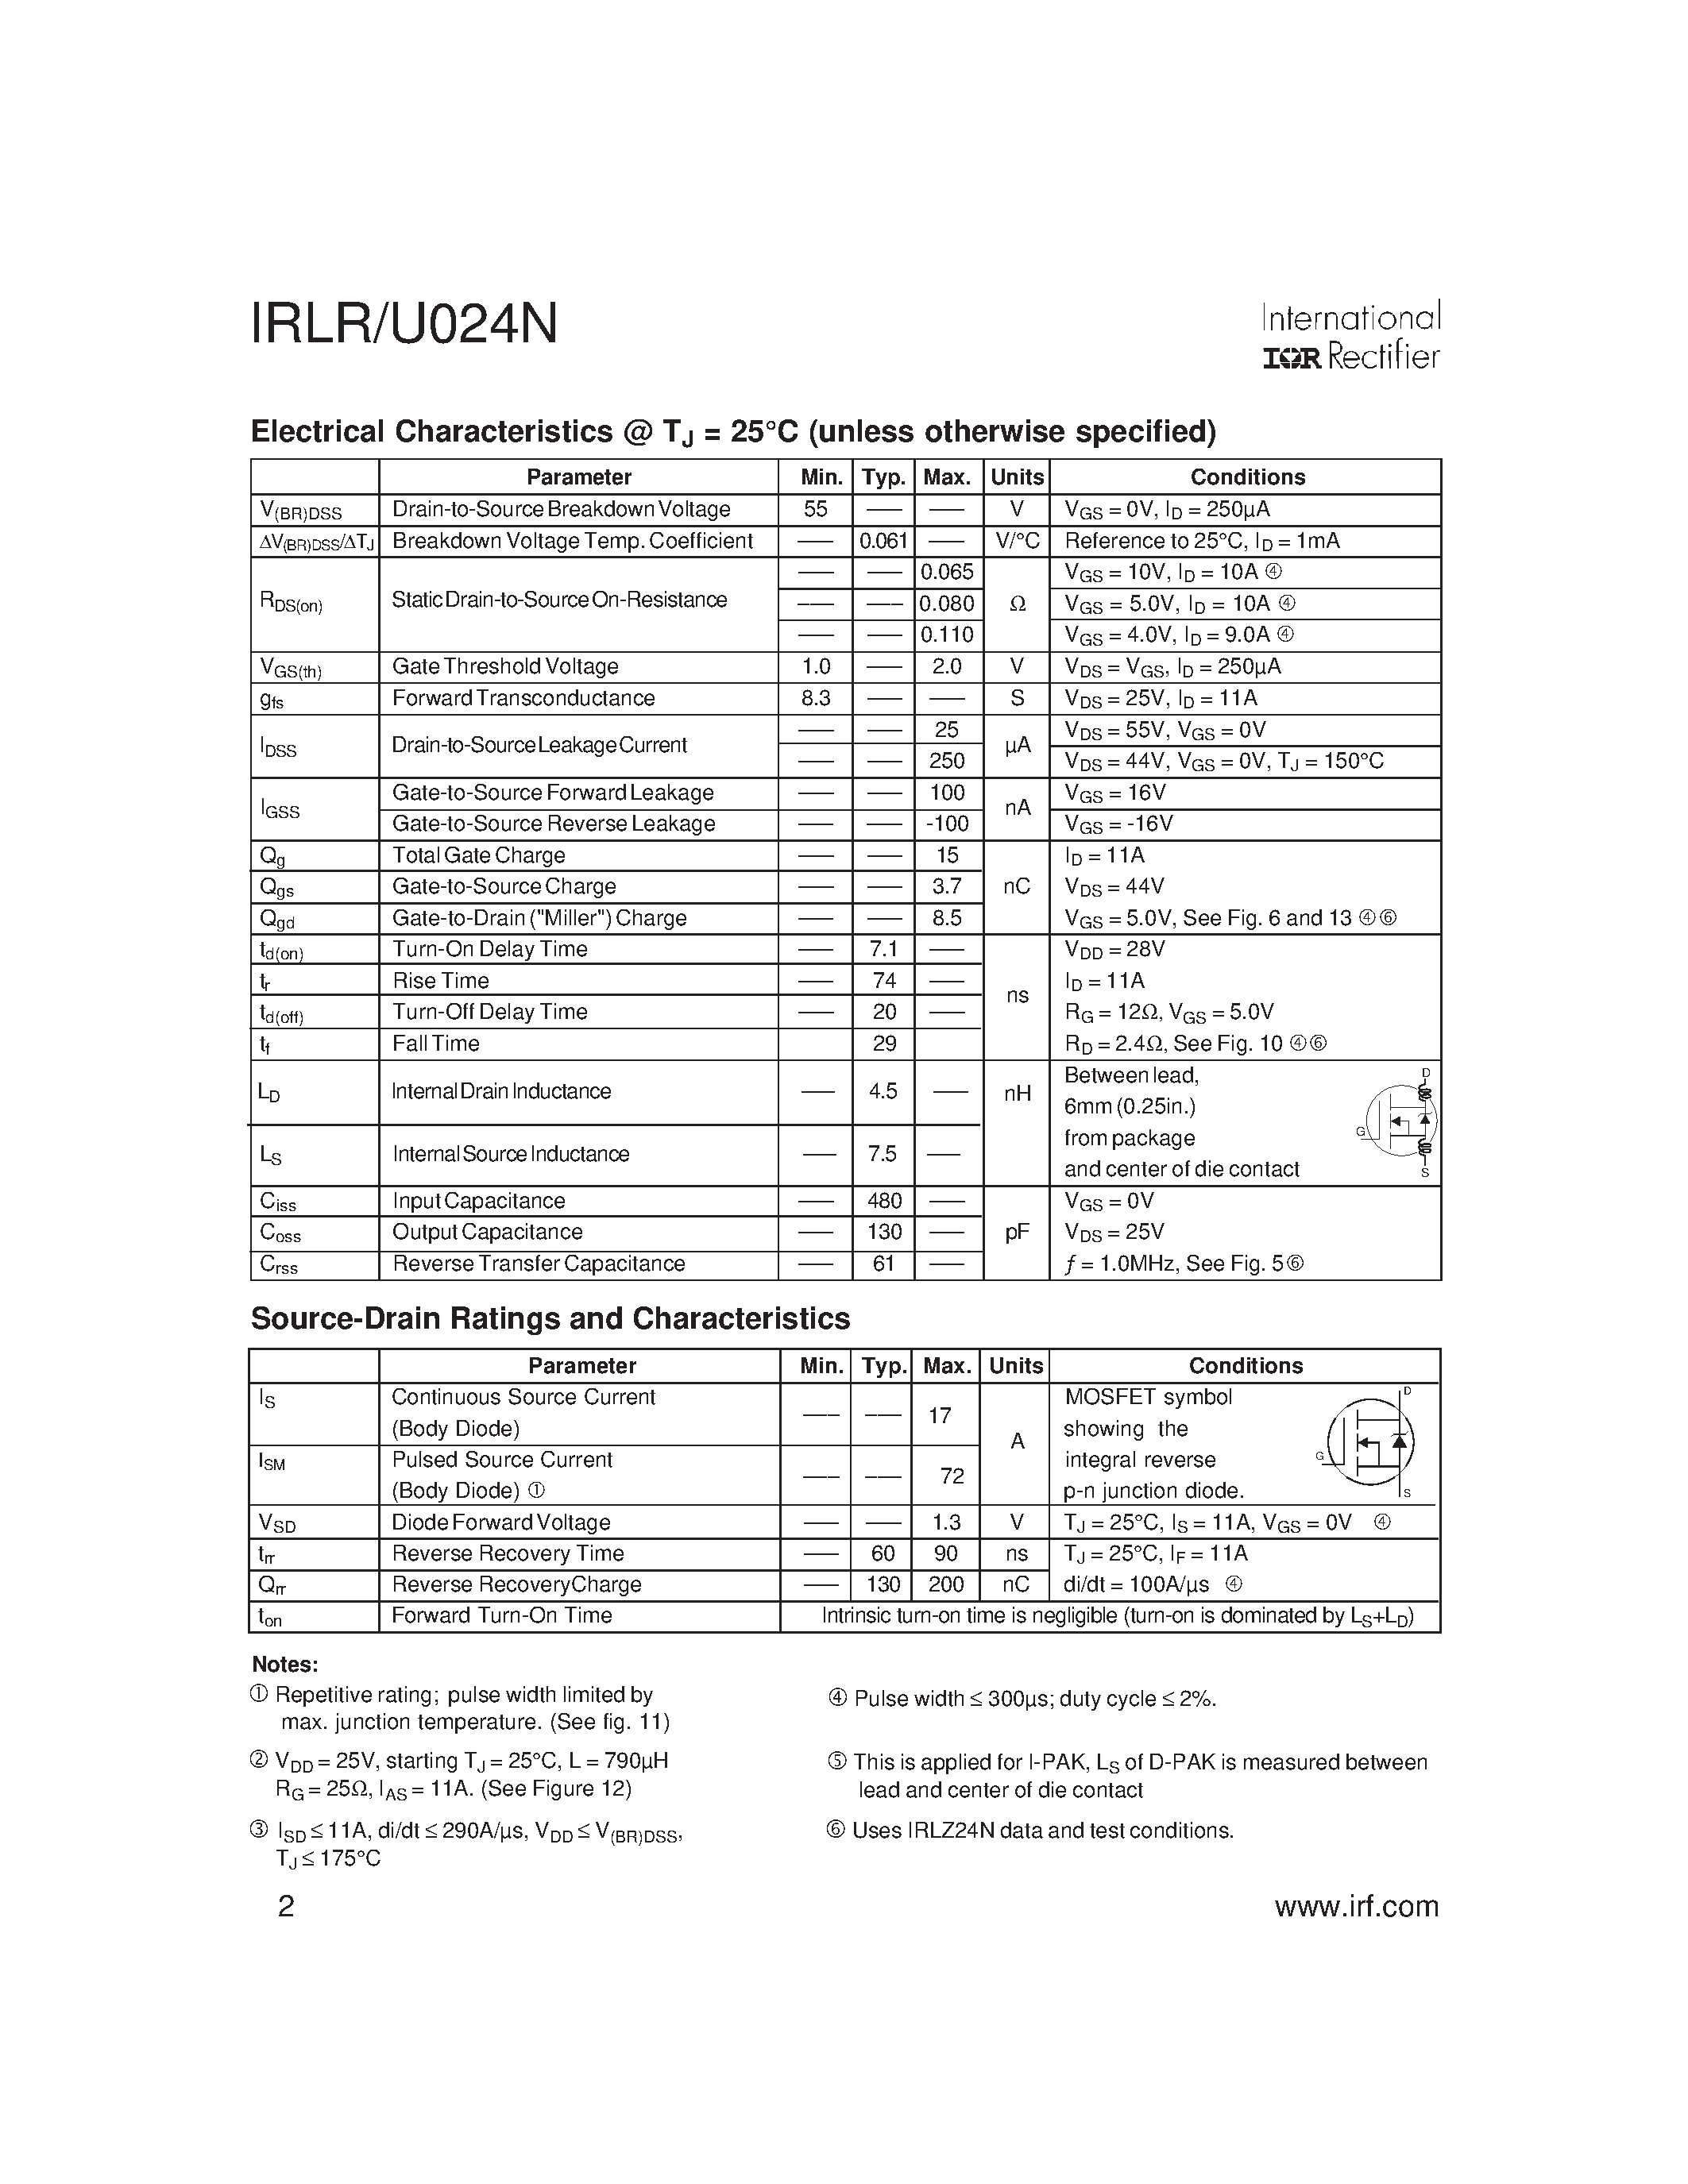 Datasheet IRLR024N - (IRLU/R024N) Power MOSFET page 2